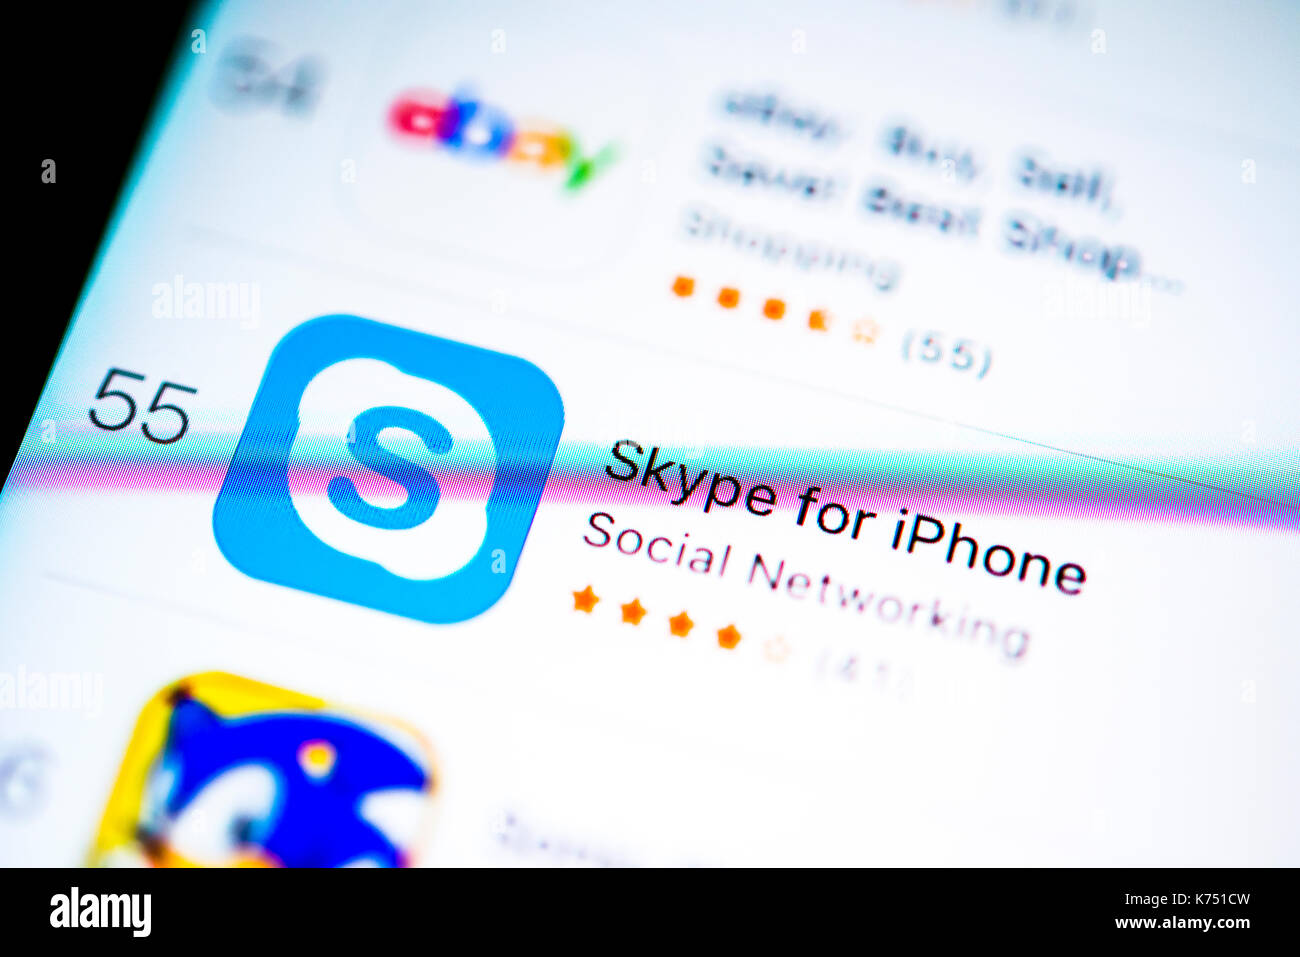 Skype app nell'app Apple Store, voip, visualizzazione su uno schermo di un telefono mobile, iphone, ios, smartphone, registrazione di macro, dettaglio Foto Stock